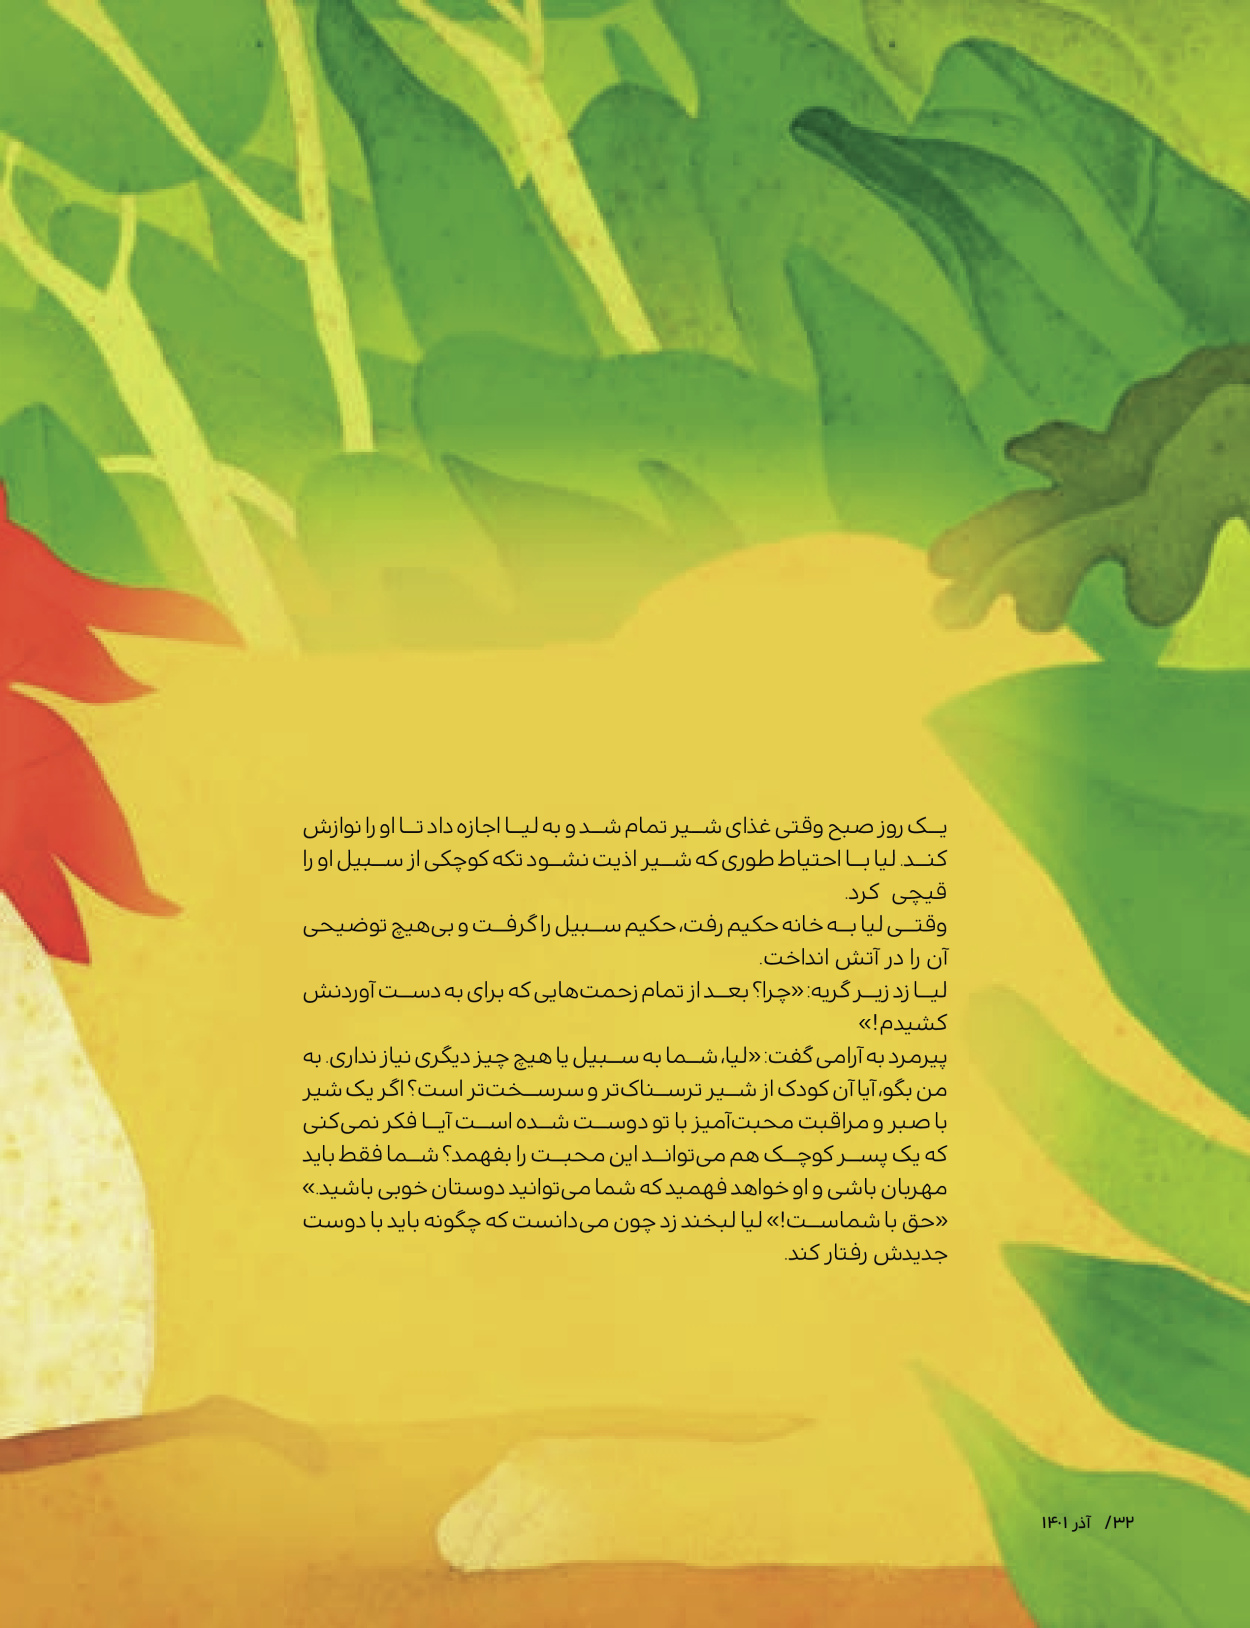 ماه نامه بچه های ایران - شماره یک - ۰۷ شهریور ۱۴۰۲ - صفحه ۳۲